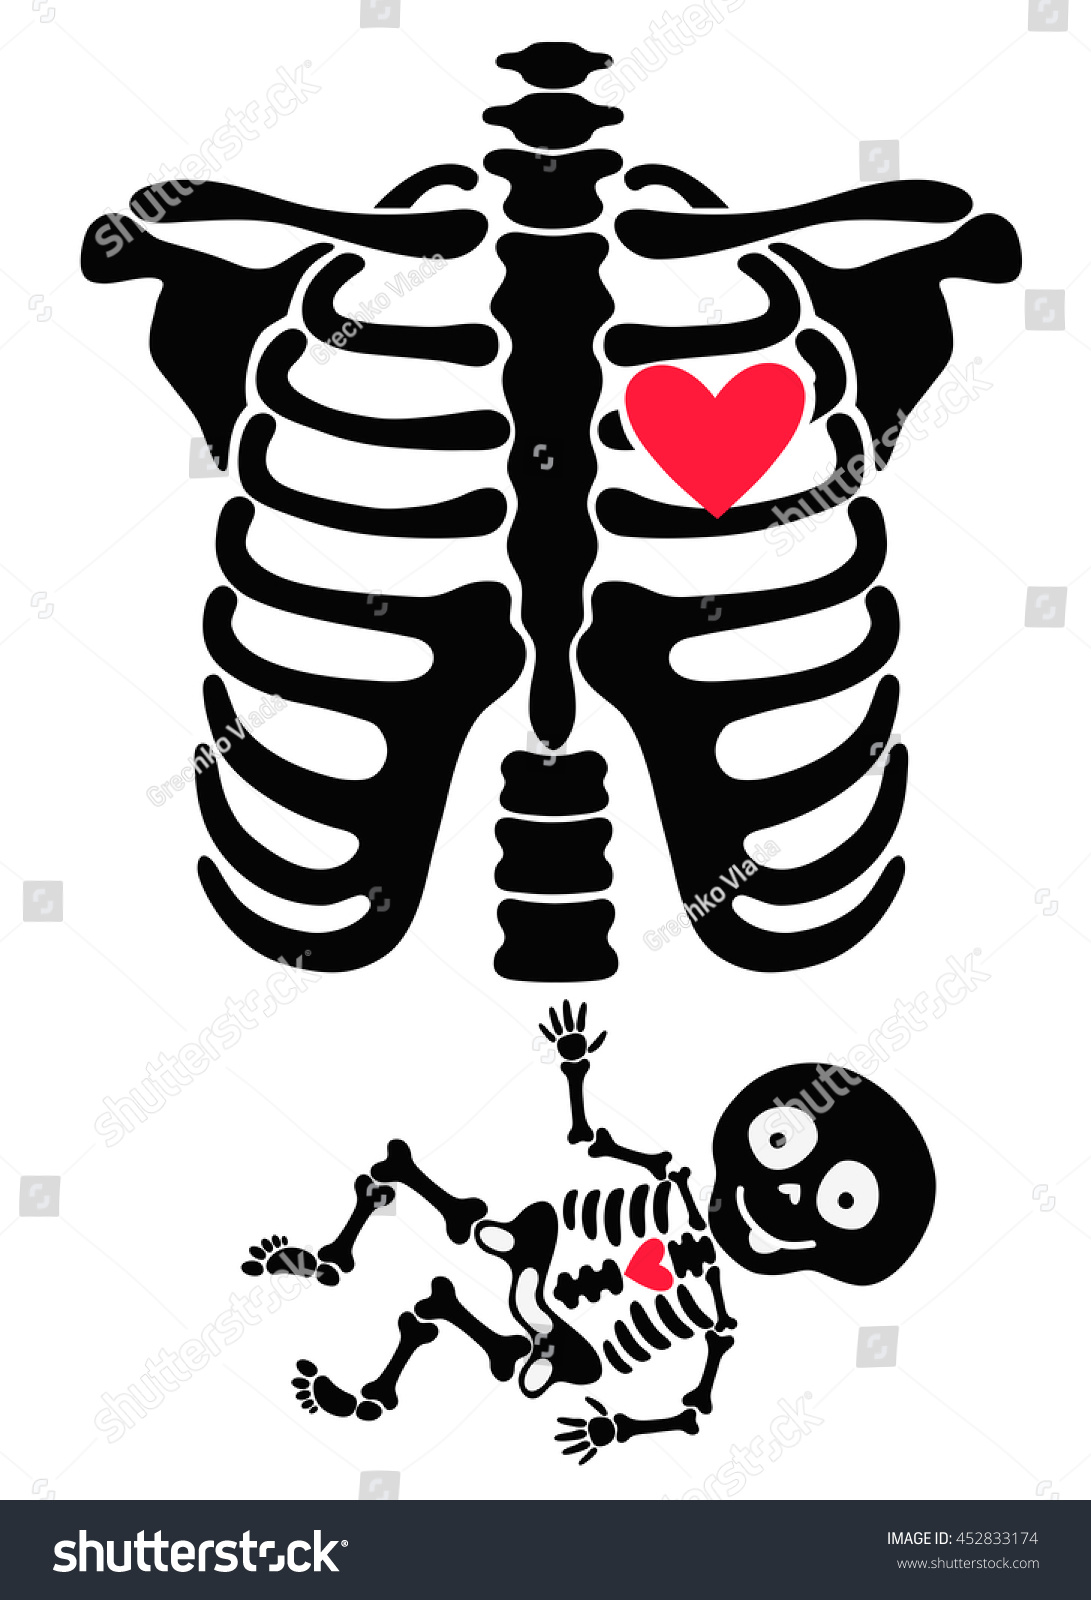 funny baby vs skeleton